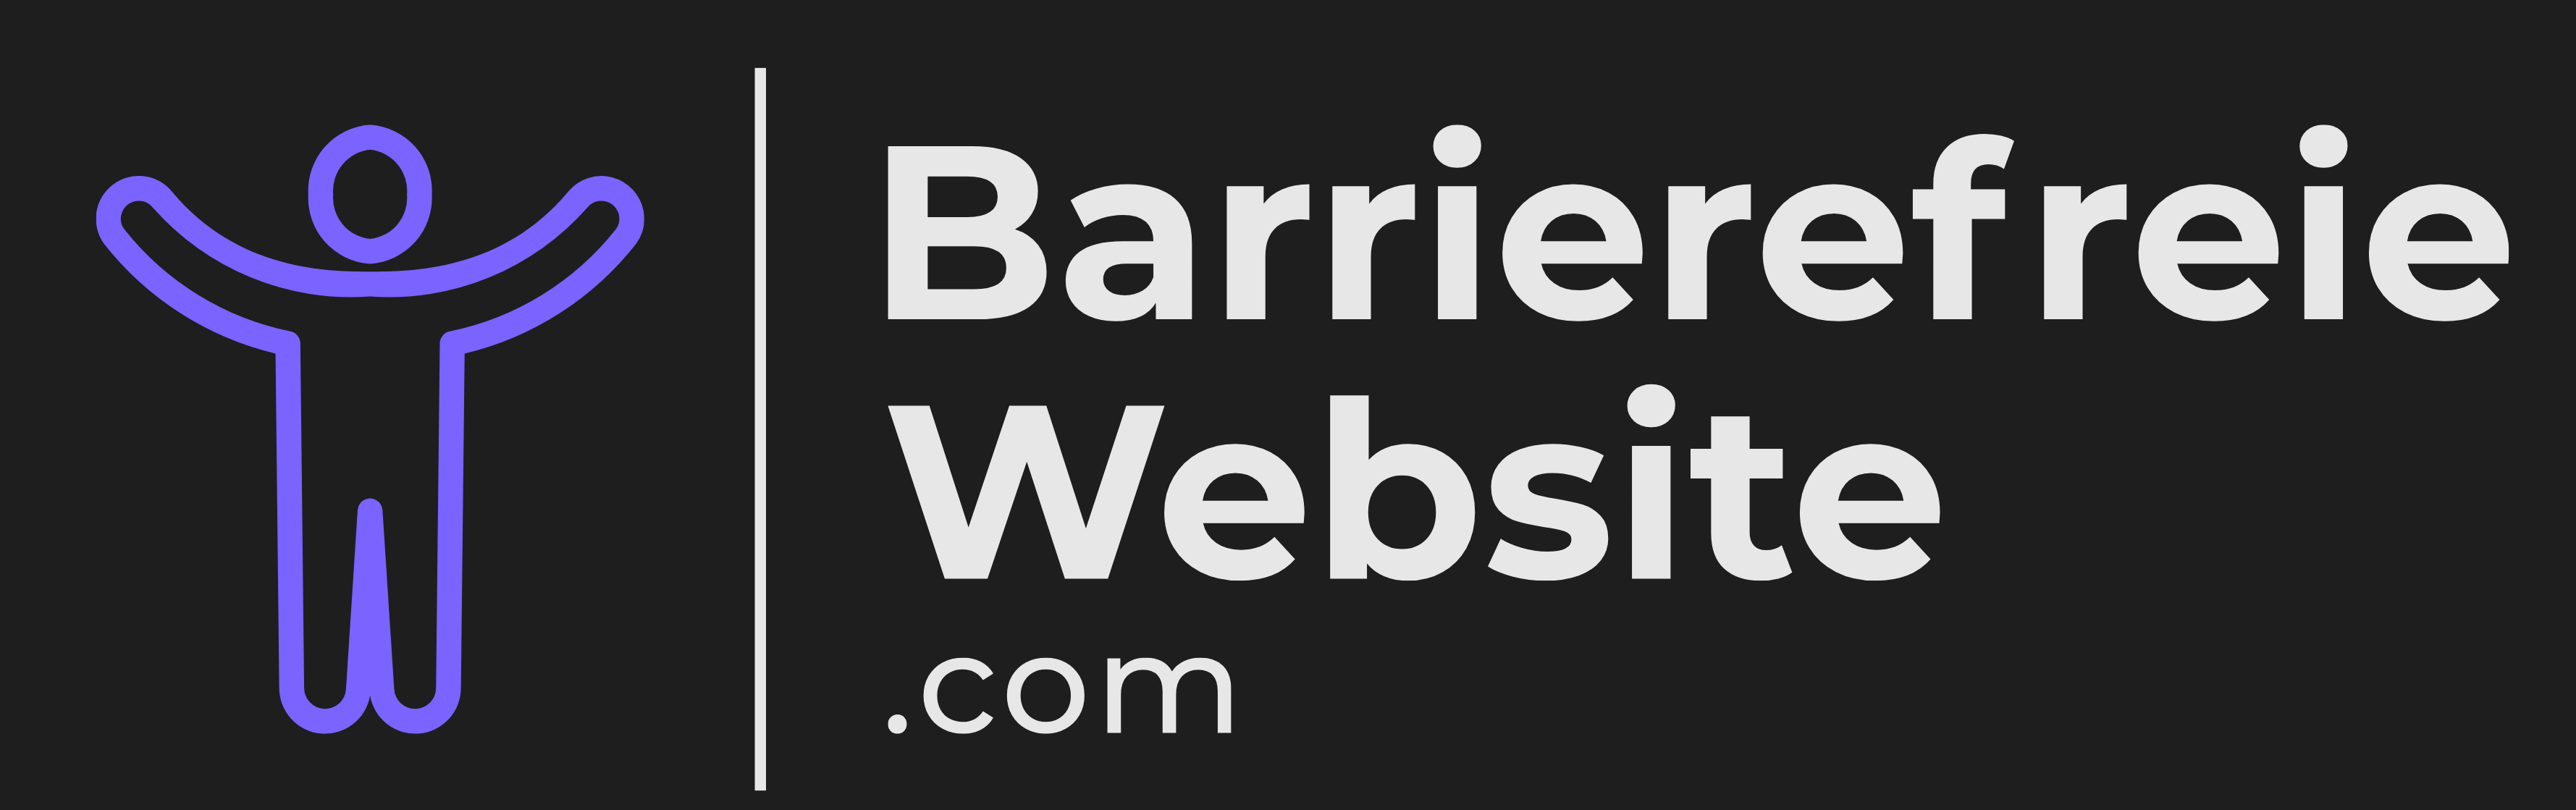 barrierefreiewebsite.com